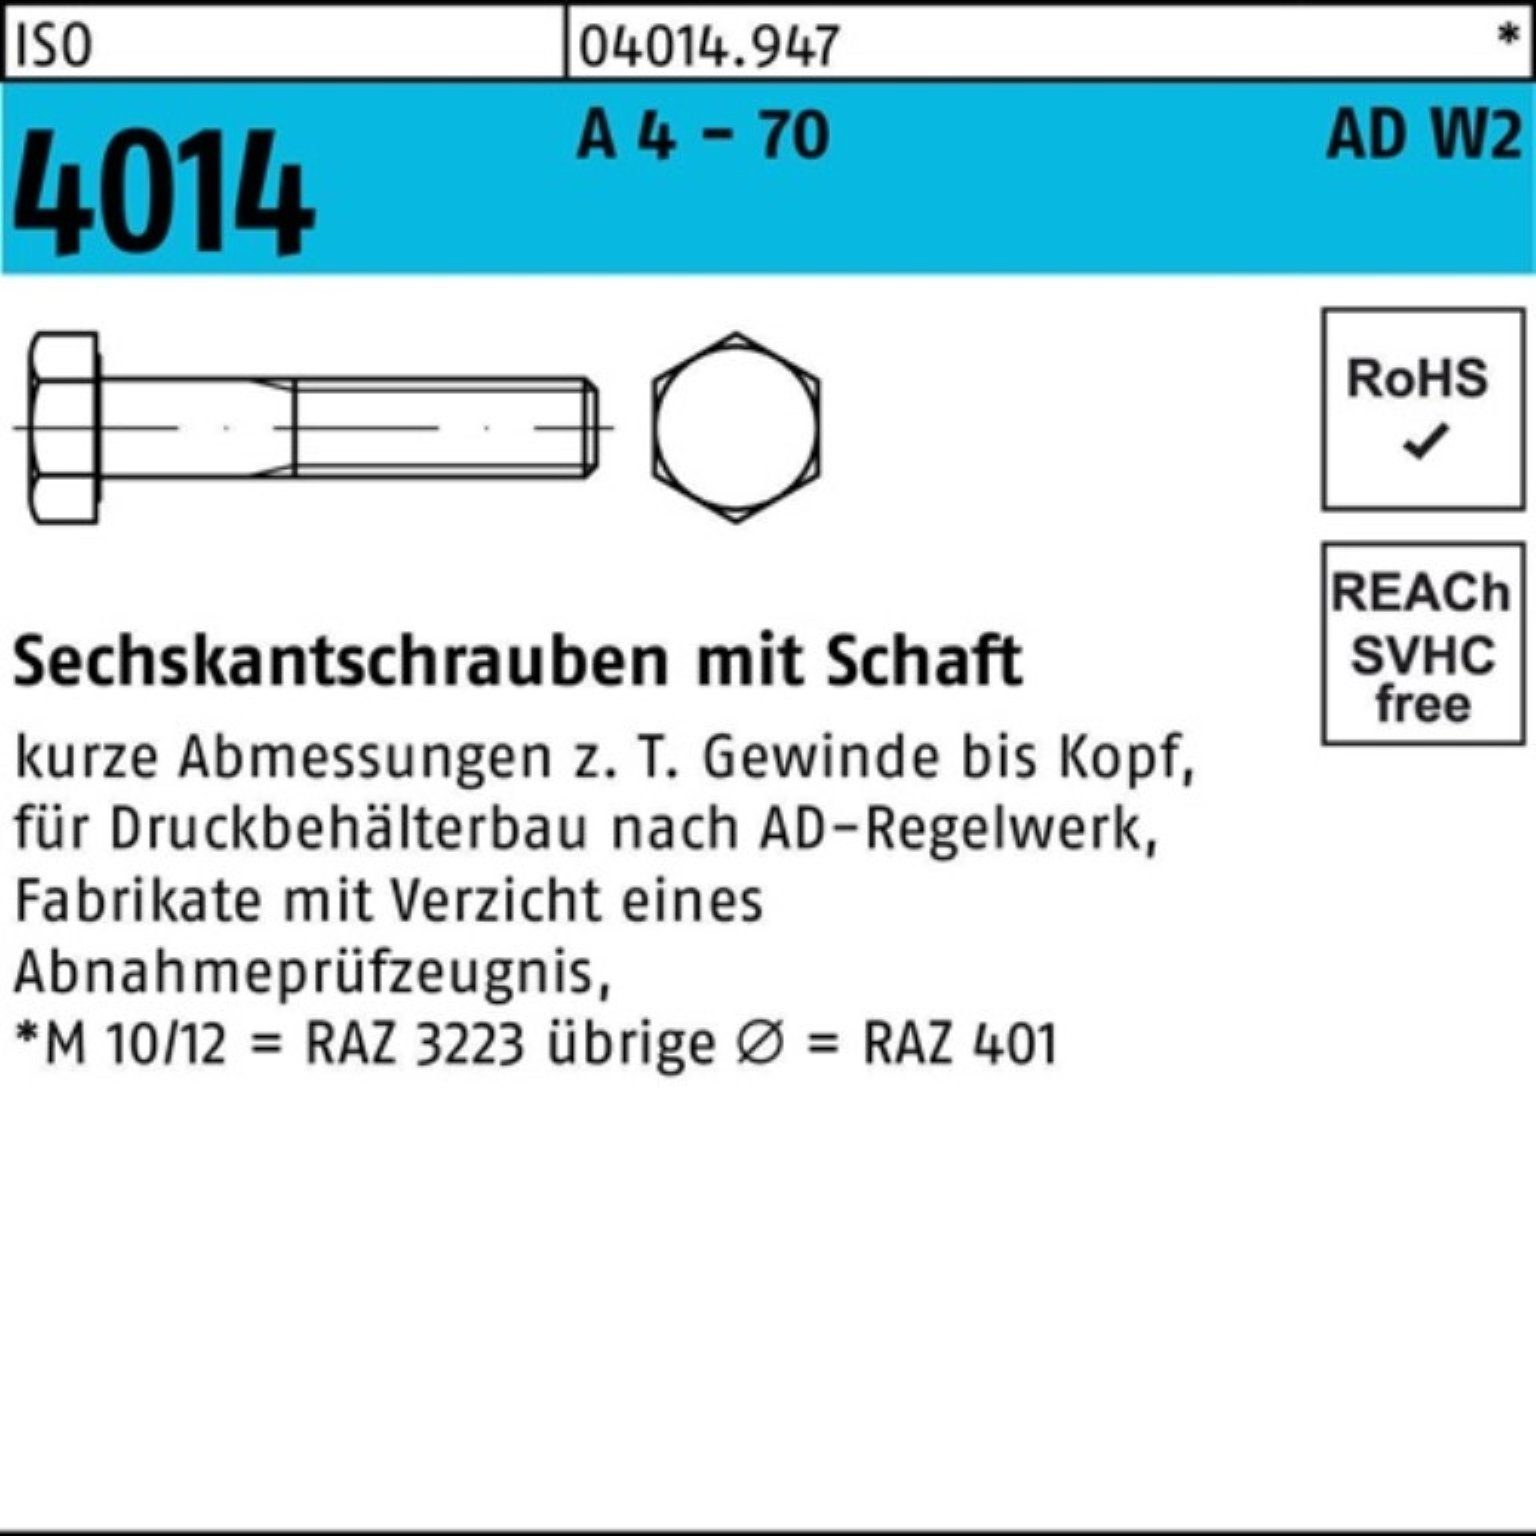 Bufab Sechskantschraube 100er Pack Sechskantschraube ISO 4014 Schaft M16x 200 A 4 - 70 AD-W2 1